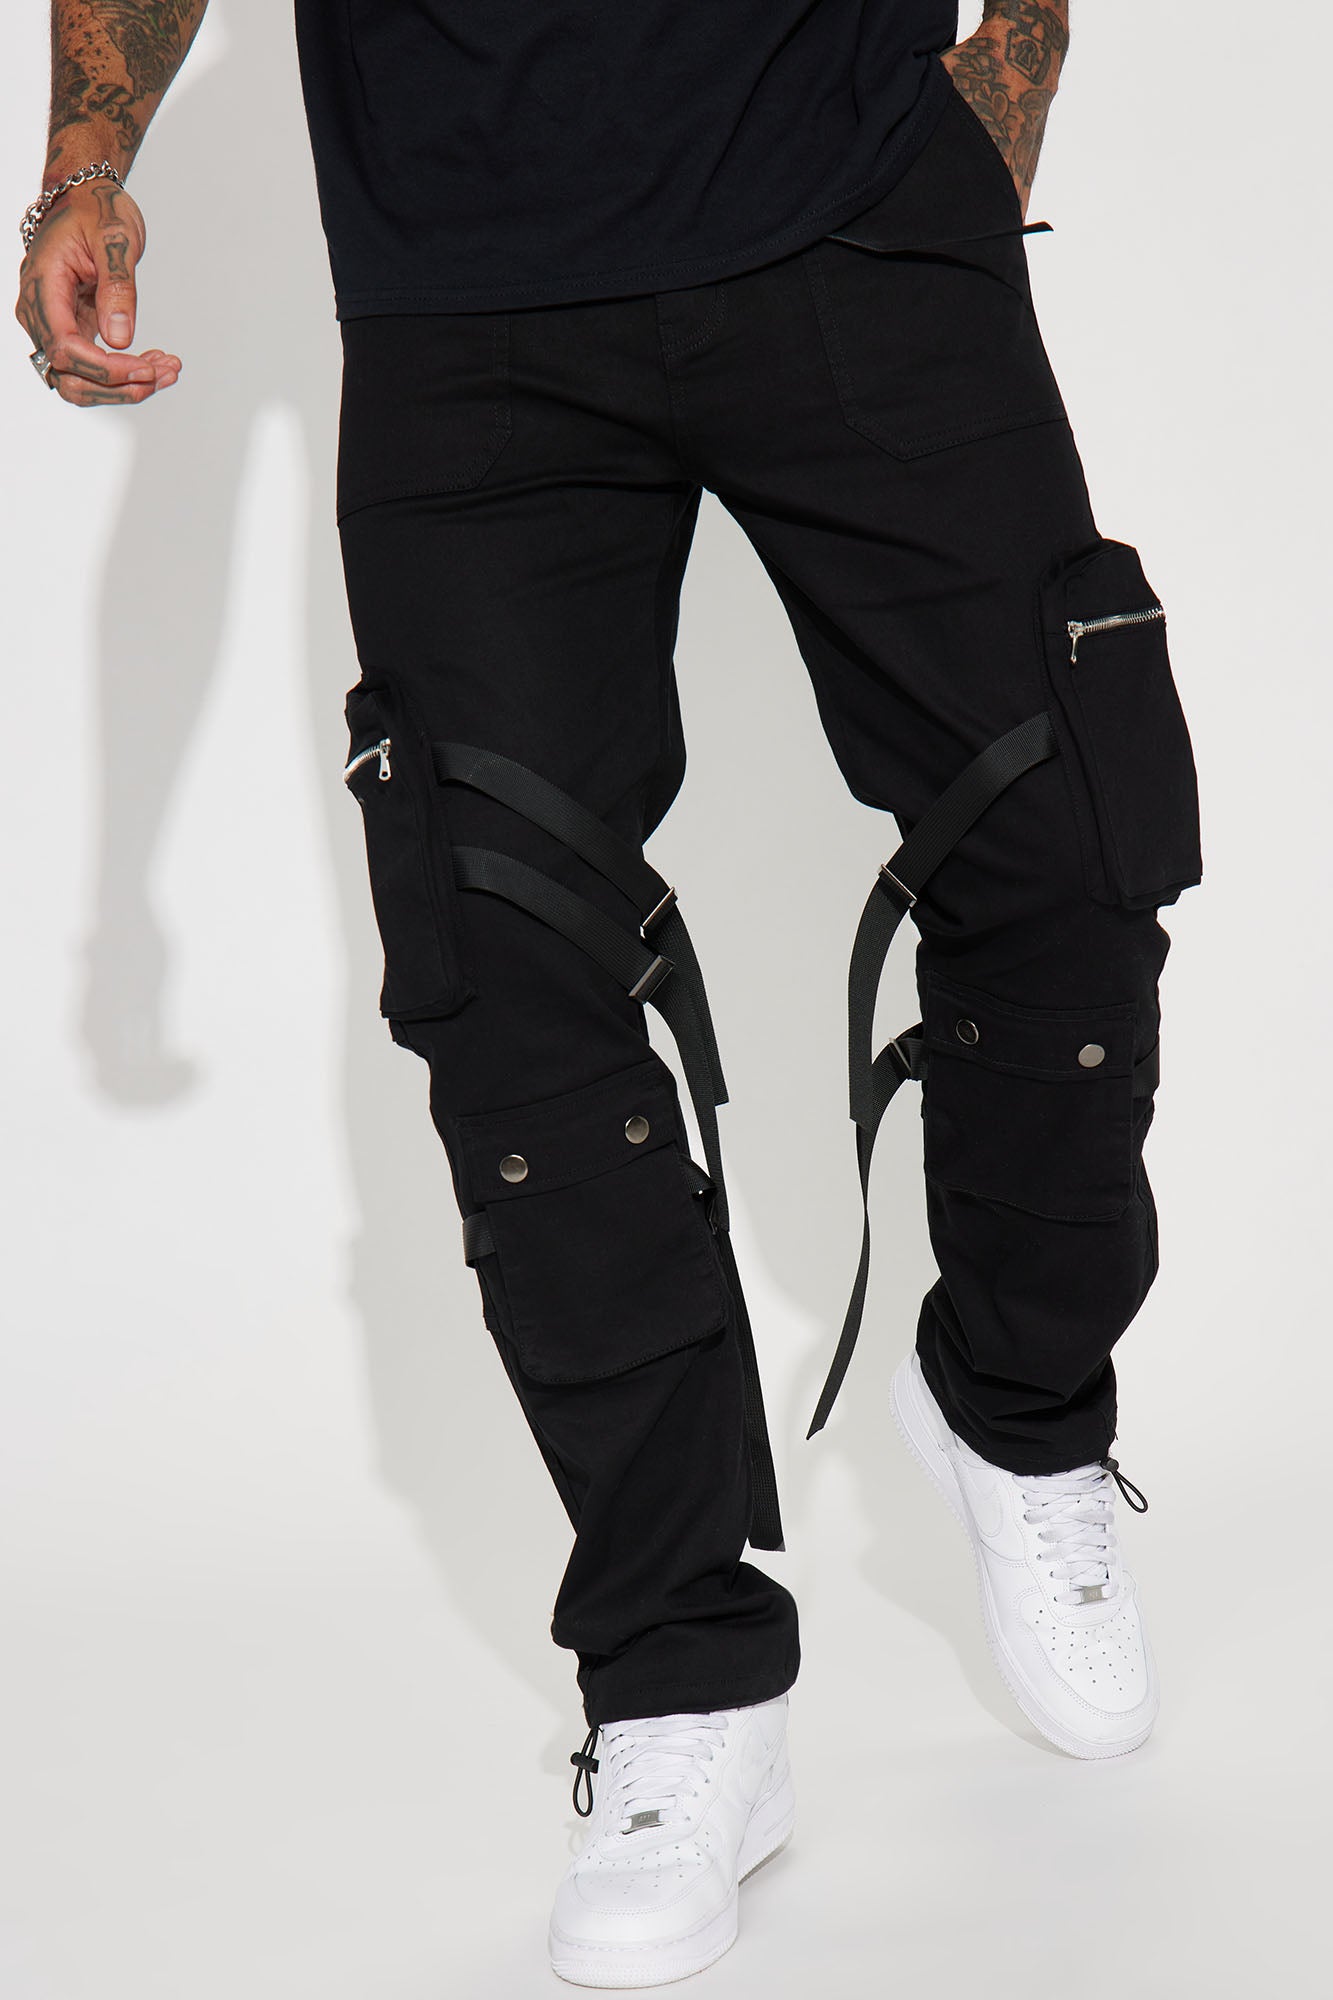 Source Custom made straps  stones black jean pants slim hip hop street  wear designer jeans men on malibabacom